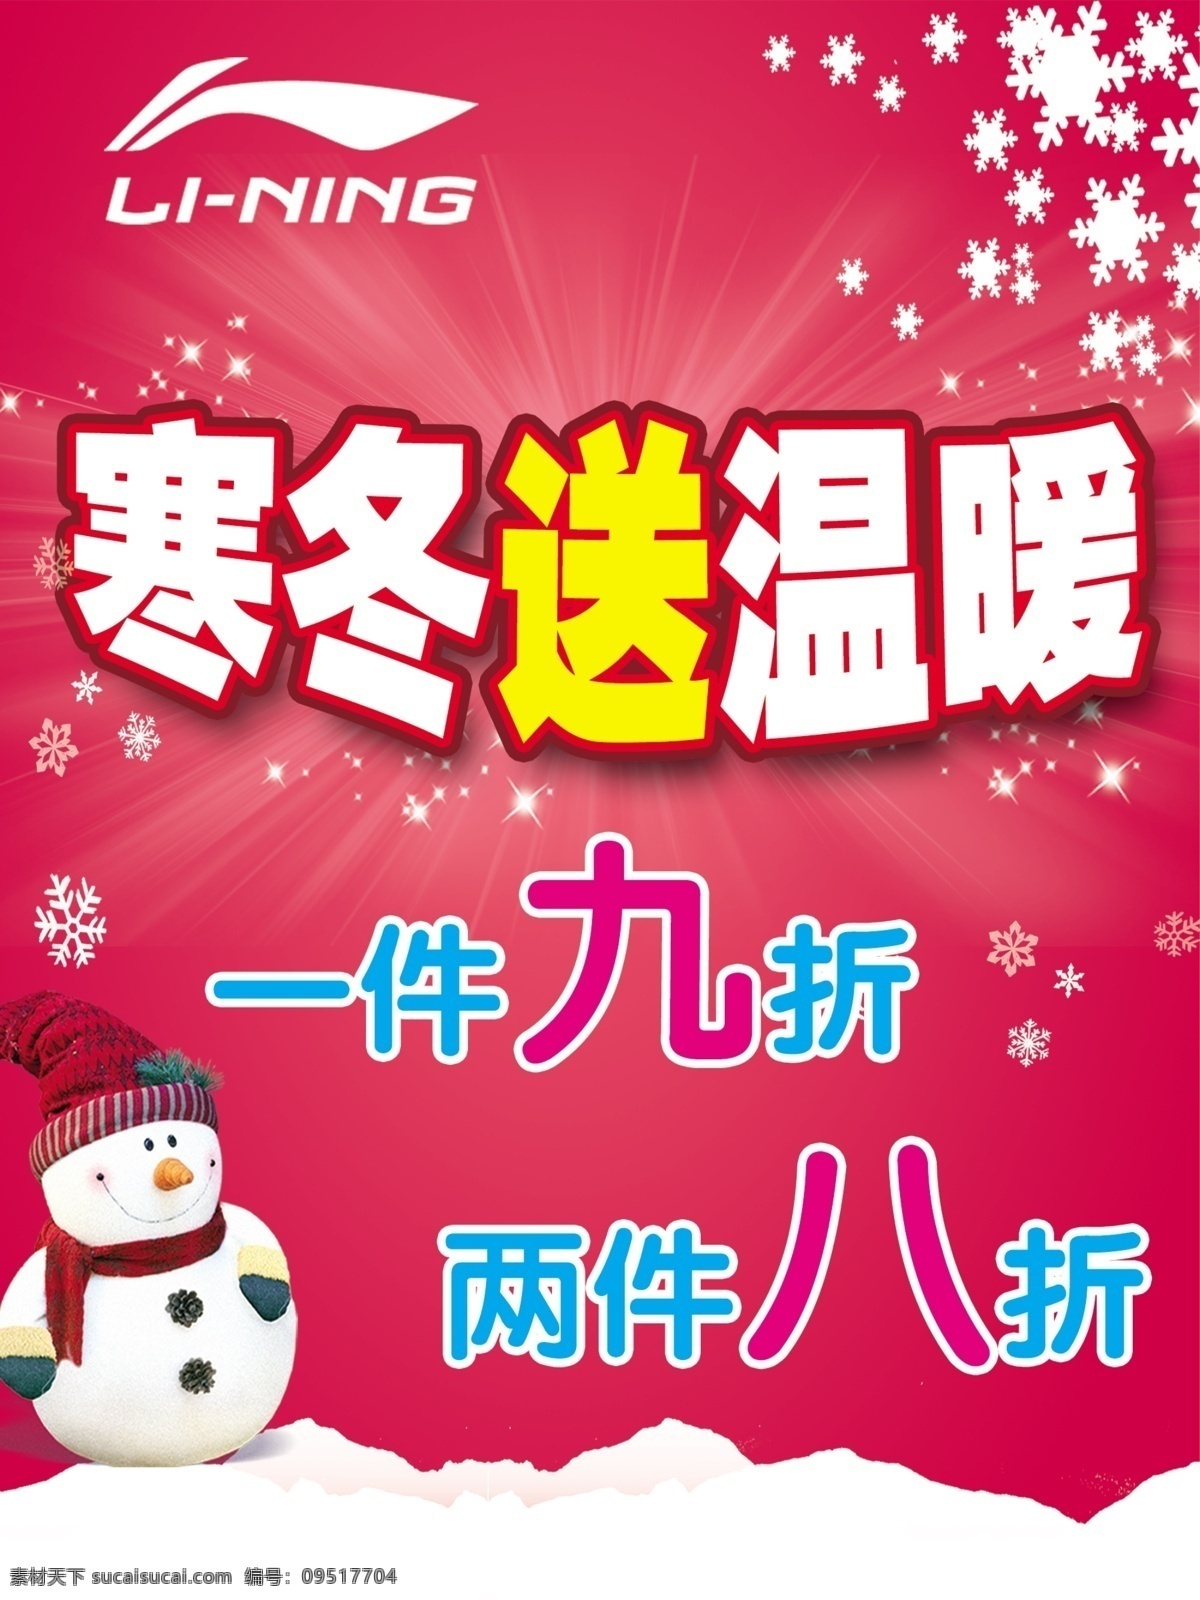 李宁 冬季 活动 宣传 送温暖 雪花 雪人 红色背景 李宁标志 活动宣传 广告设计模板 源文件